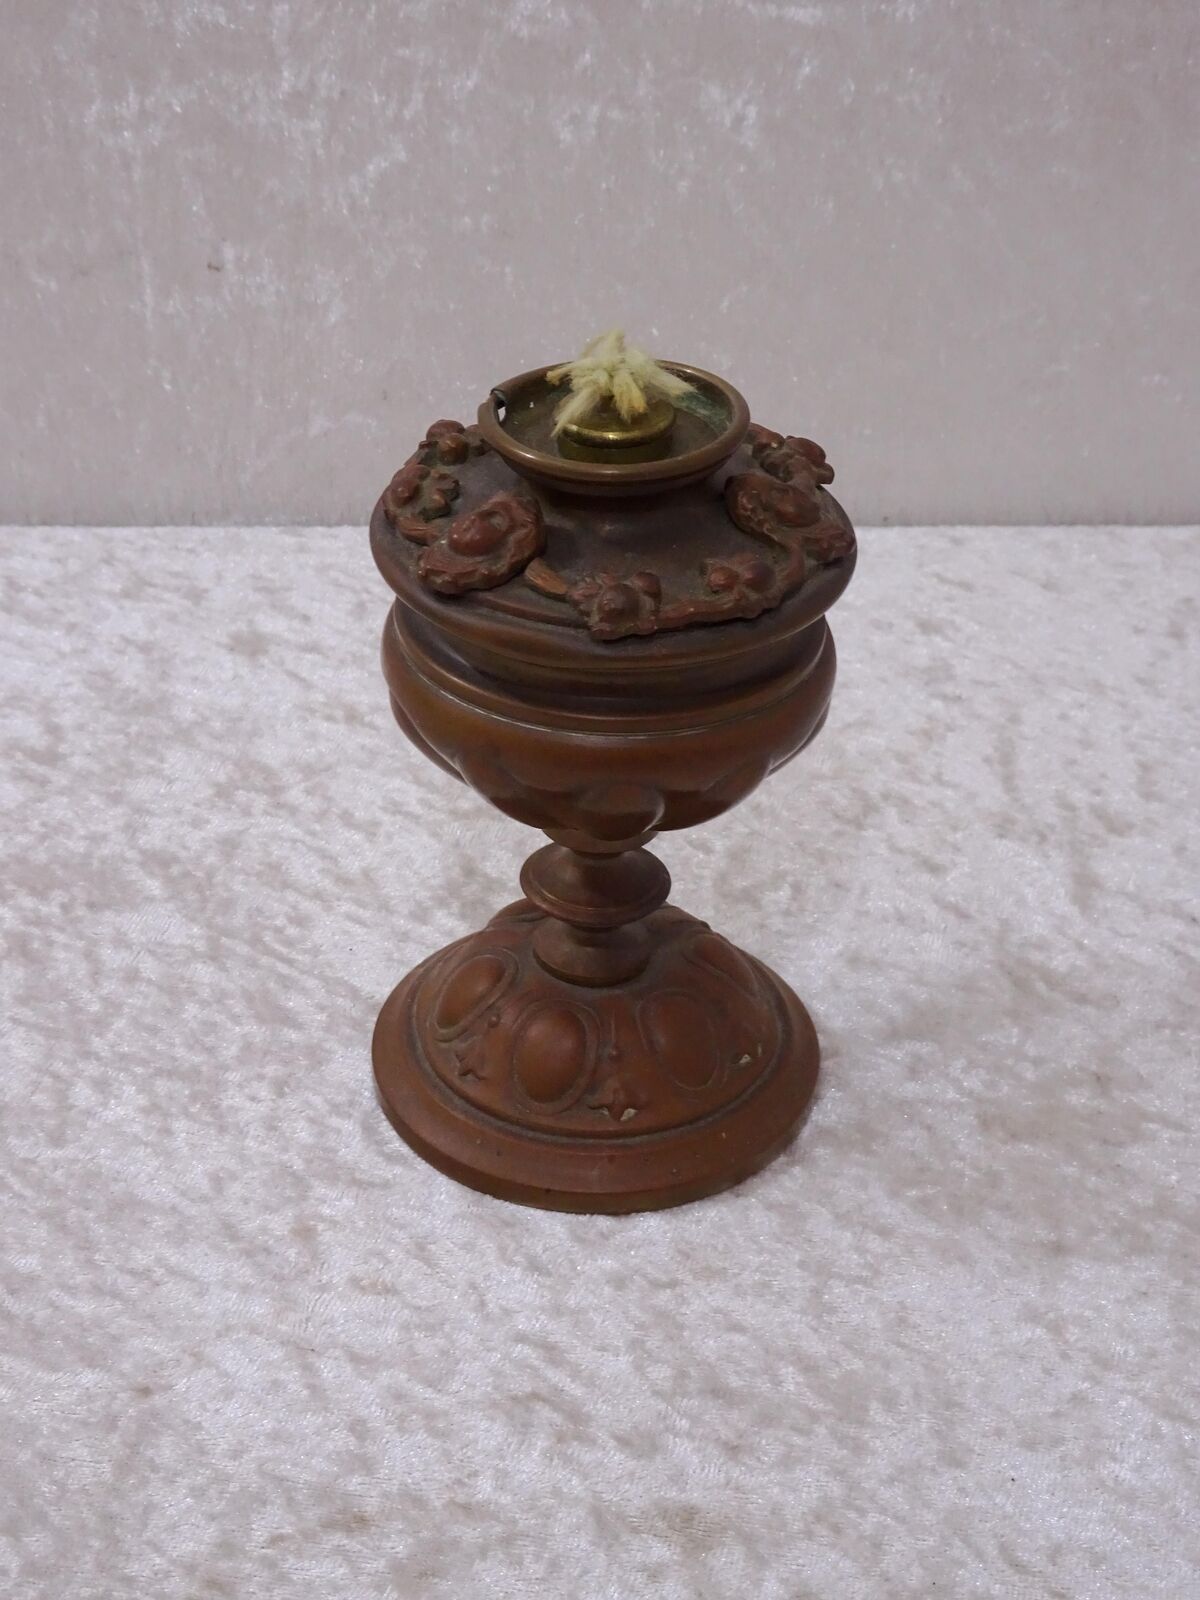 HM2G8N - Antique Metal Kerosene Lamp Maskarons - Vintage around 1900 - 11,5 CM